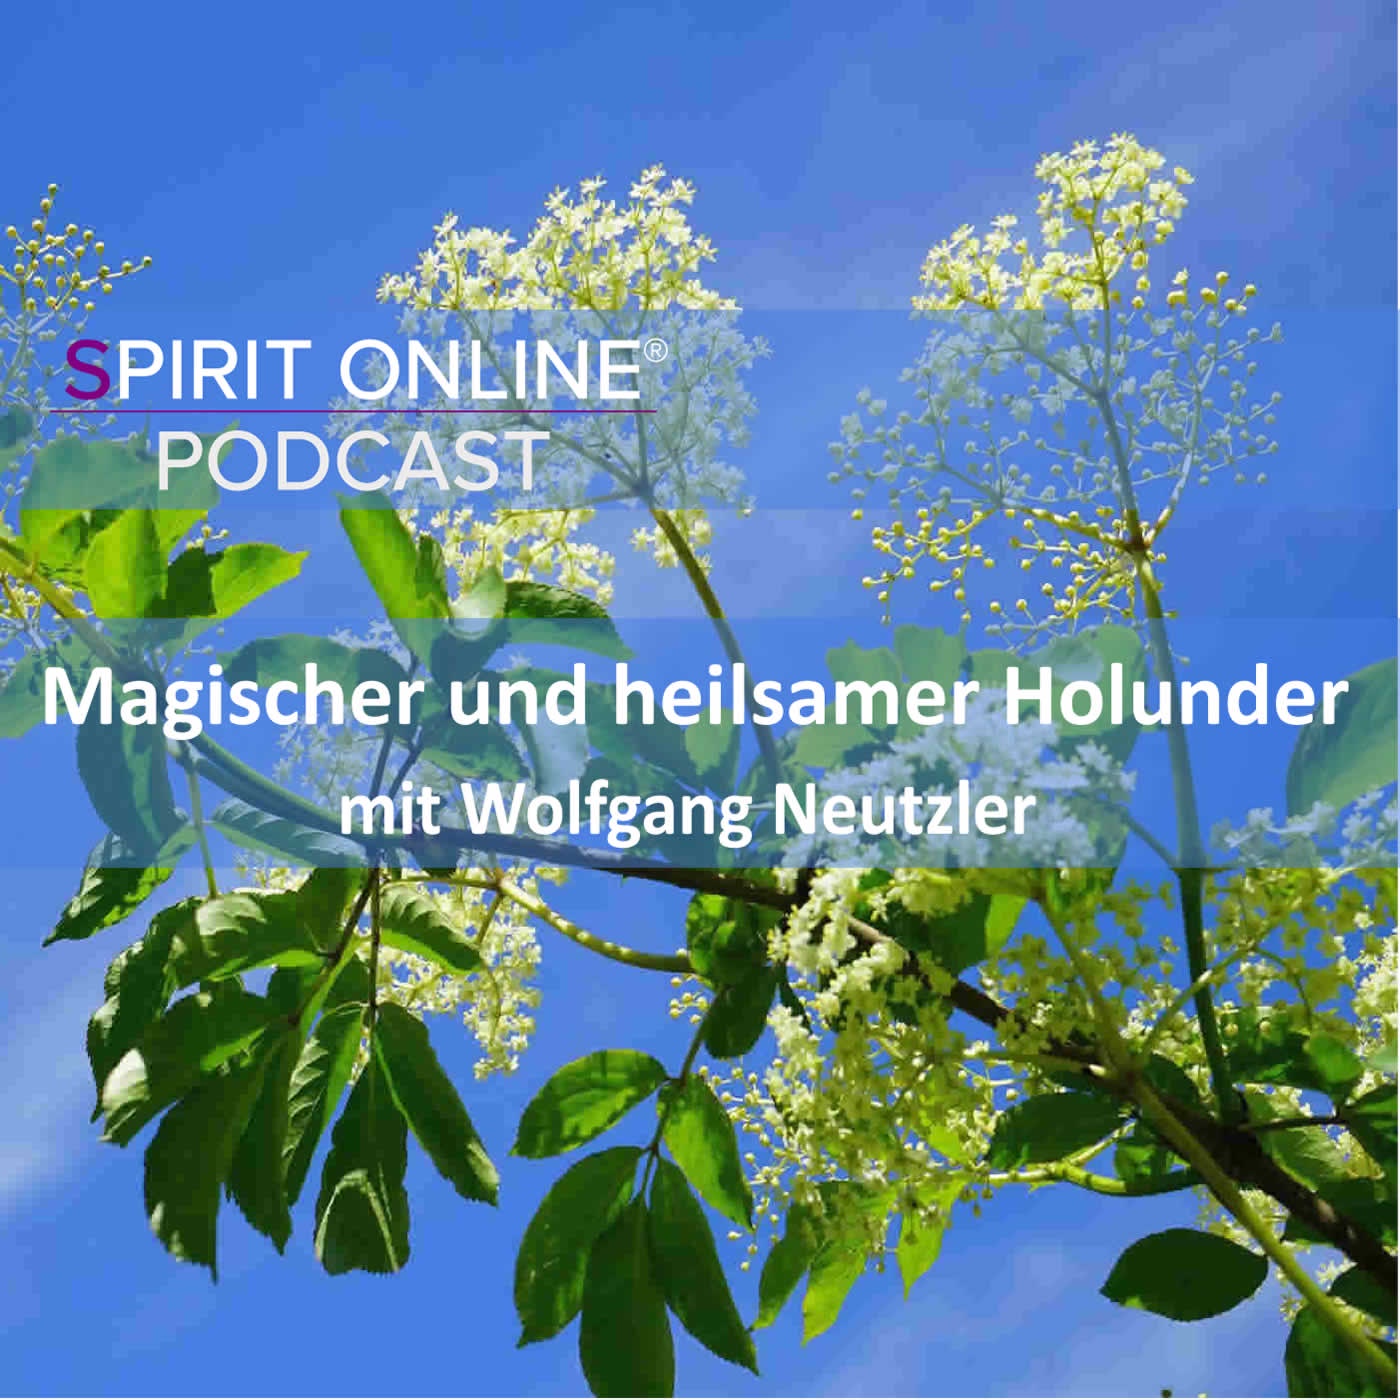 Magischer und heilsamer Holunder mit Wolfgang Neutzler